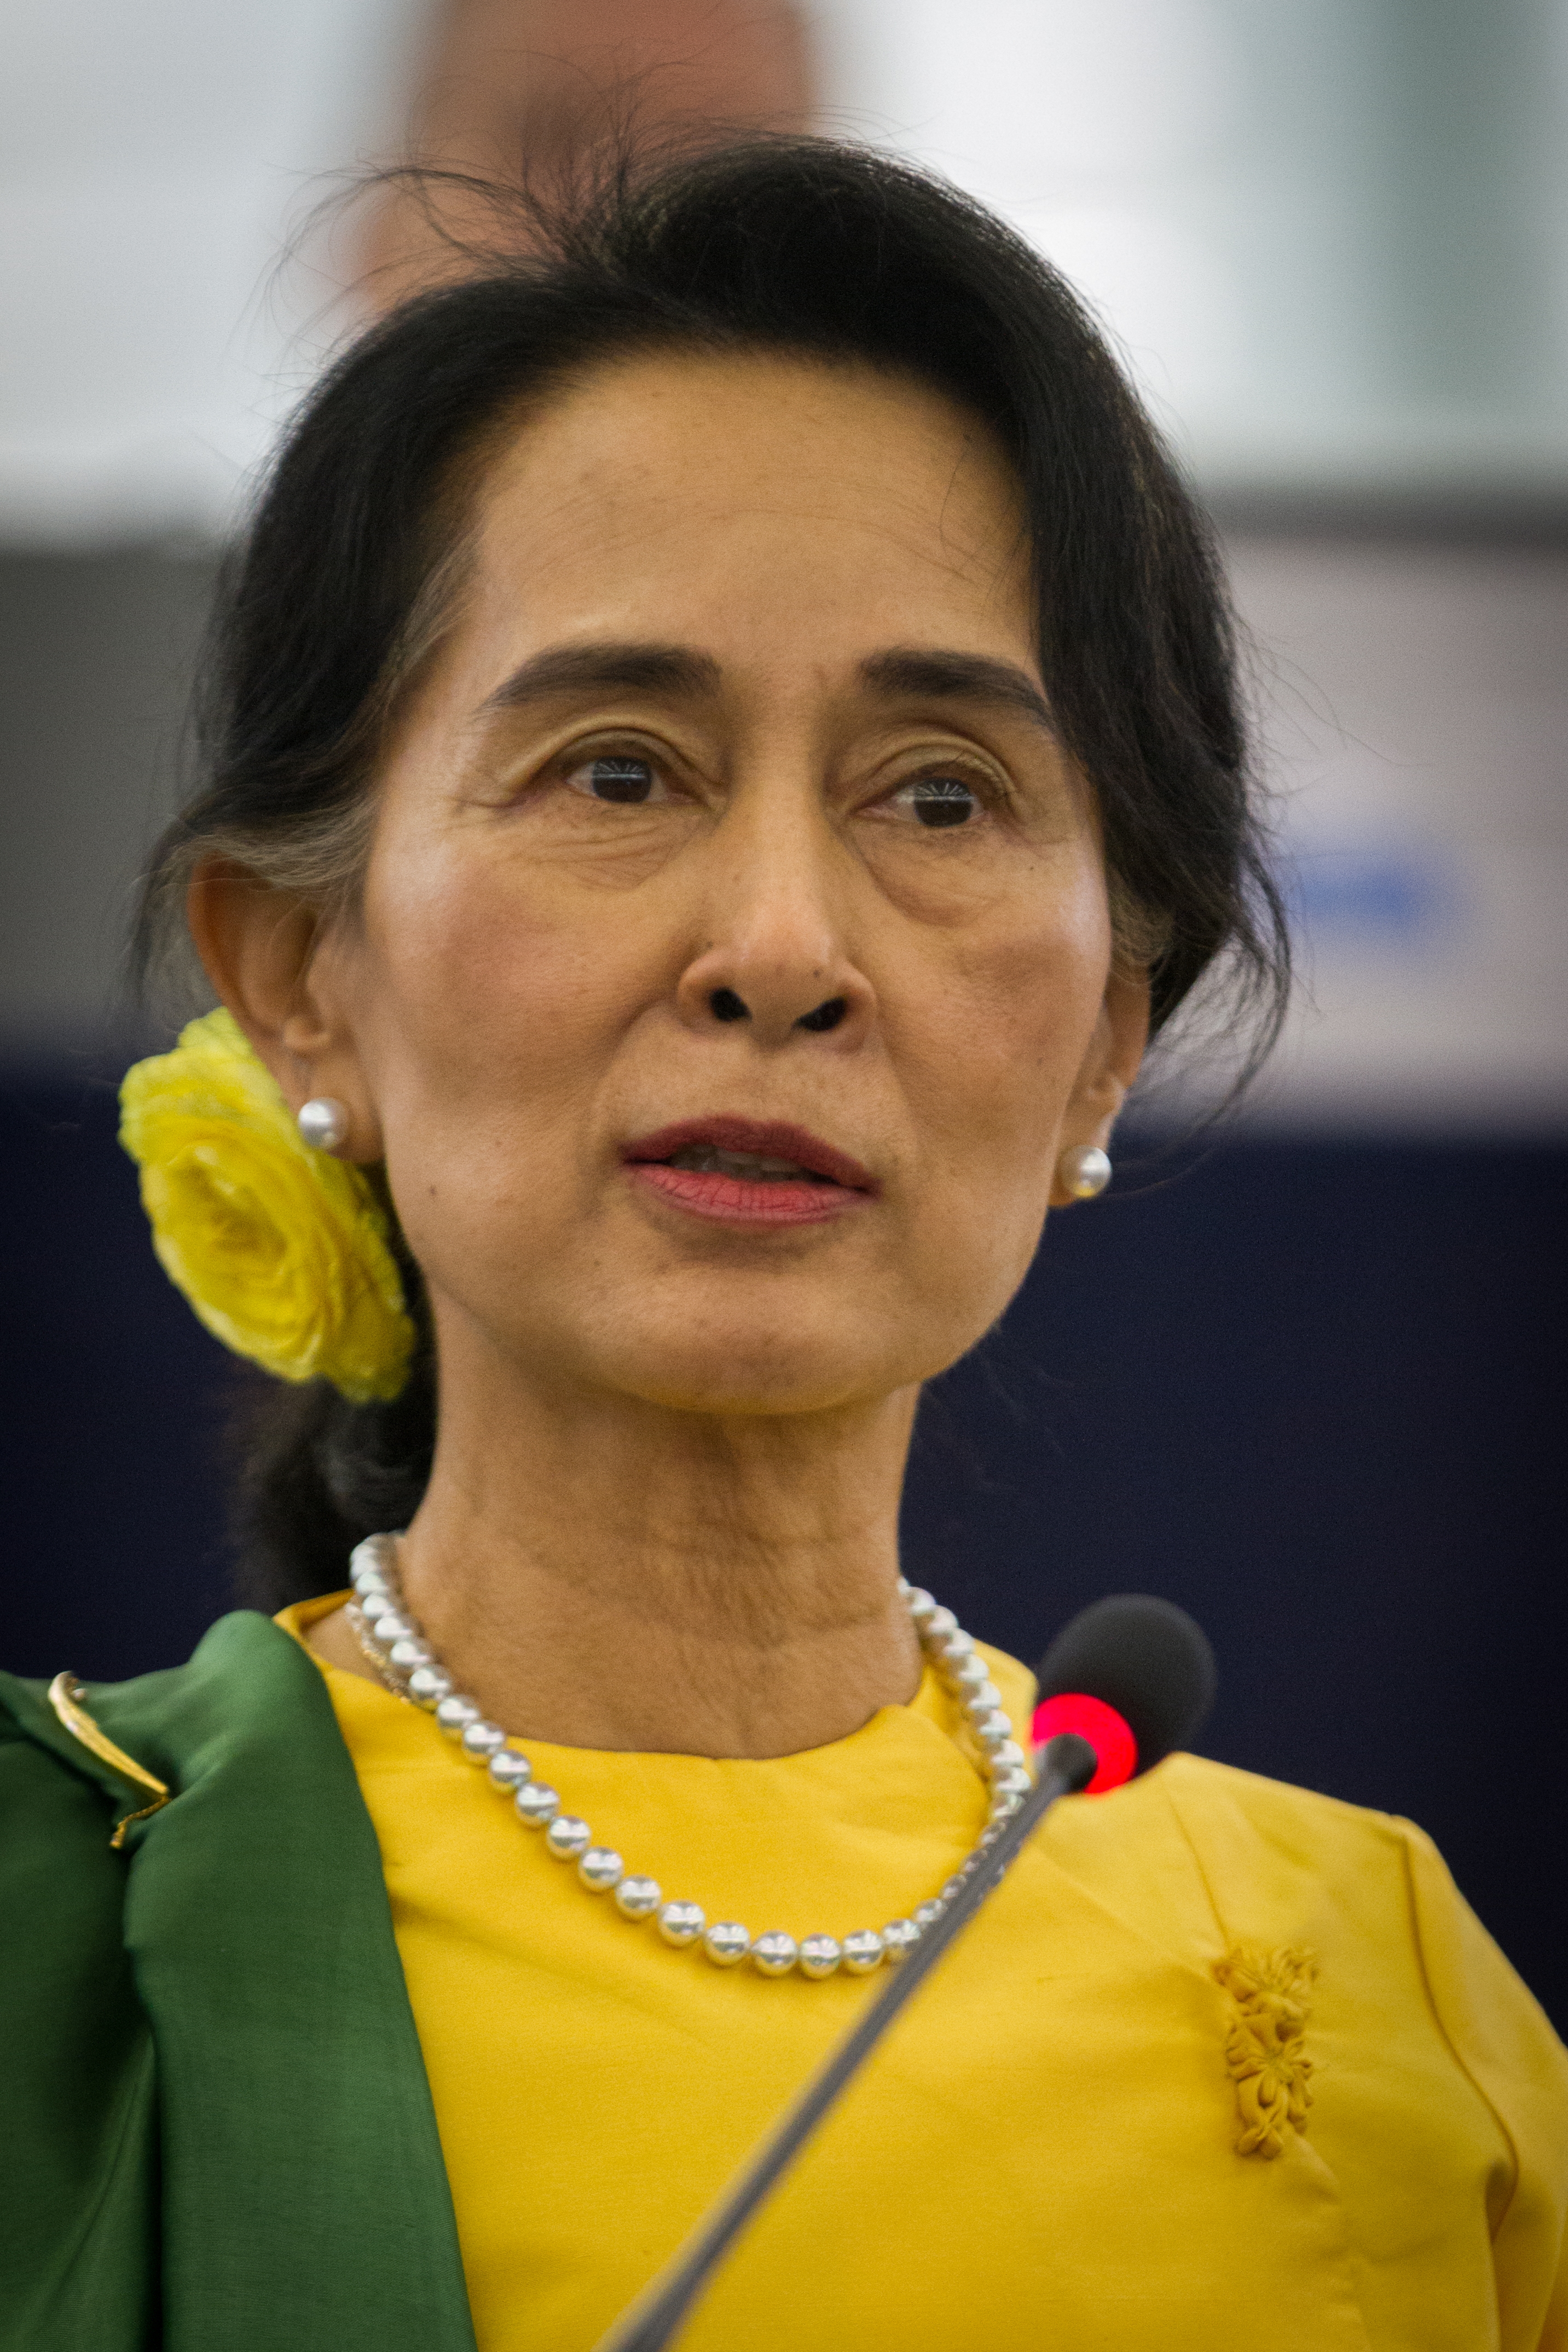 auteur Aung San Suu Kyi de la citation J'ai été arrêté maintes et maintes fois, et mes collègues aussi. Je ne peux garantir que je ne serai plus arrêté. Mais ce n'est pas quelque chose qui pèse dans mon esprit. Je ferai ce que je peux pendant que je suis libre. S'ils m'arrêtent à nouveau, je ferai ce que je peux pendant que je suis arrêté.